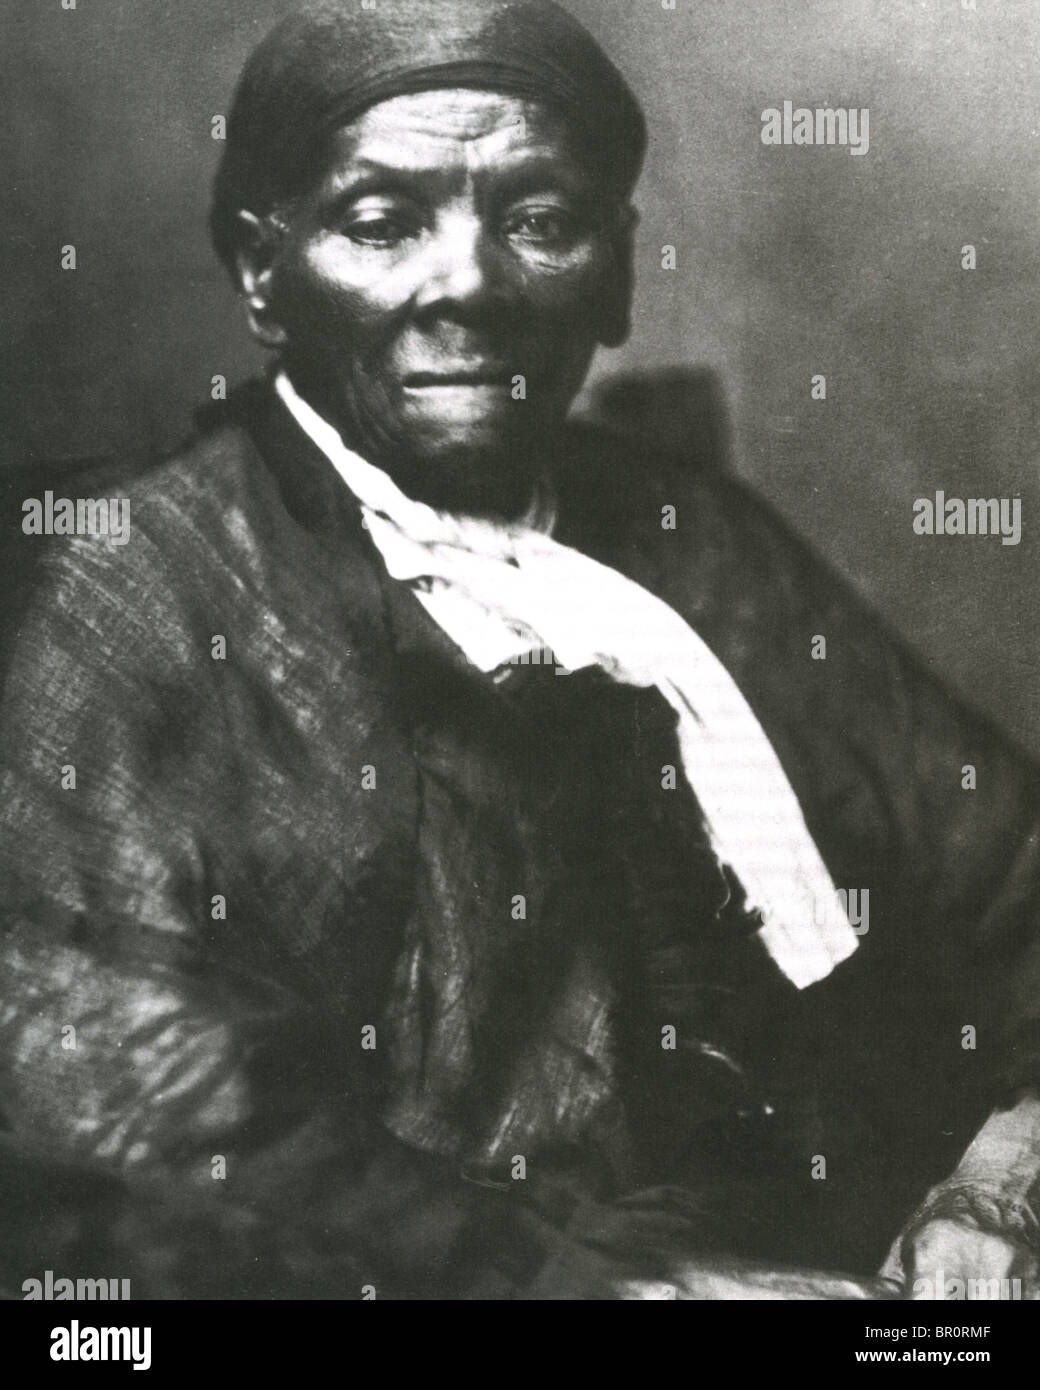 HARIRET TUBMAN (c1820-1913), US-amerikanischer Abolitionist, spy humanitäre und Union während des amerikanischen Bürgerkrieges Stockfoto